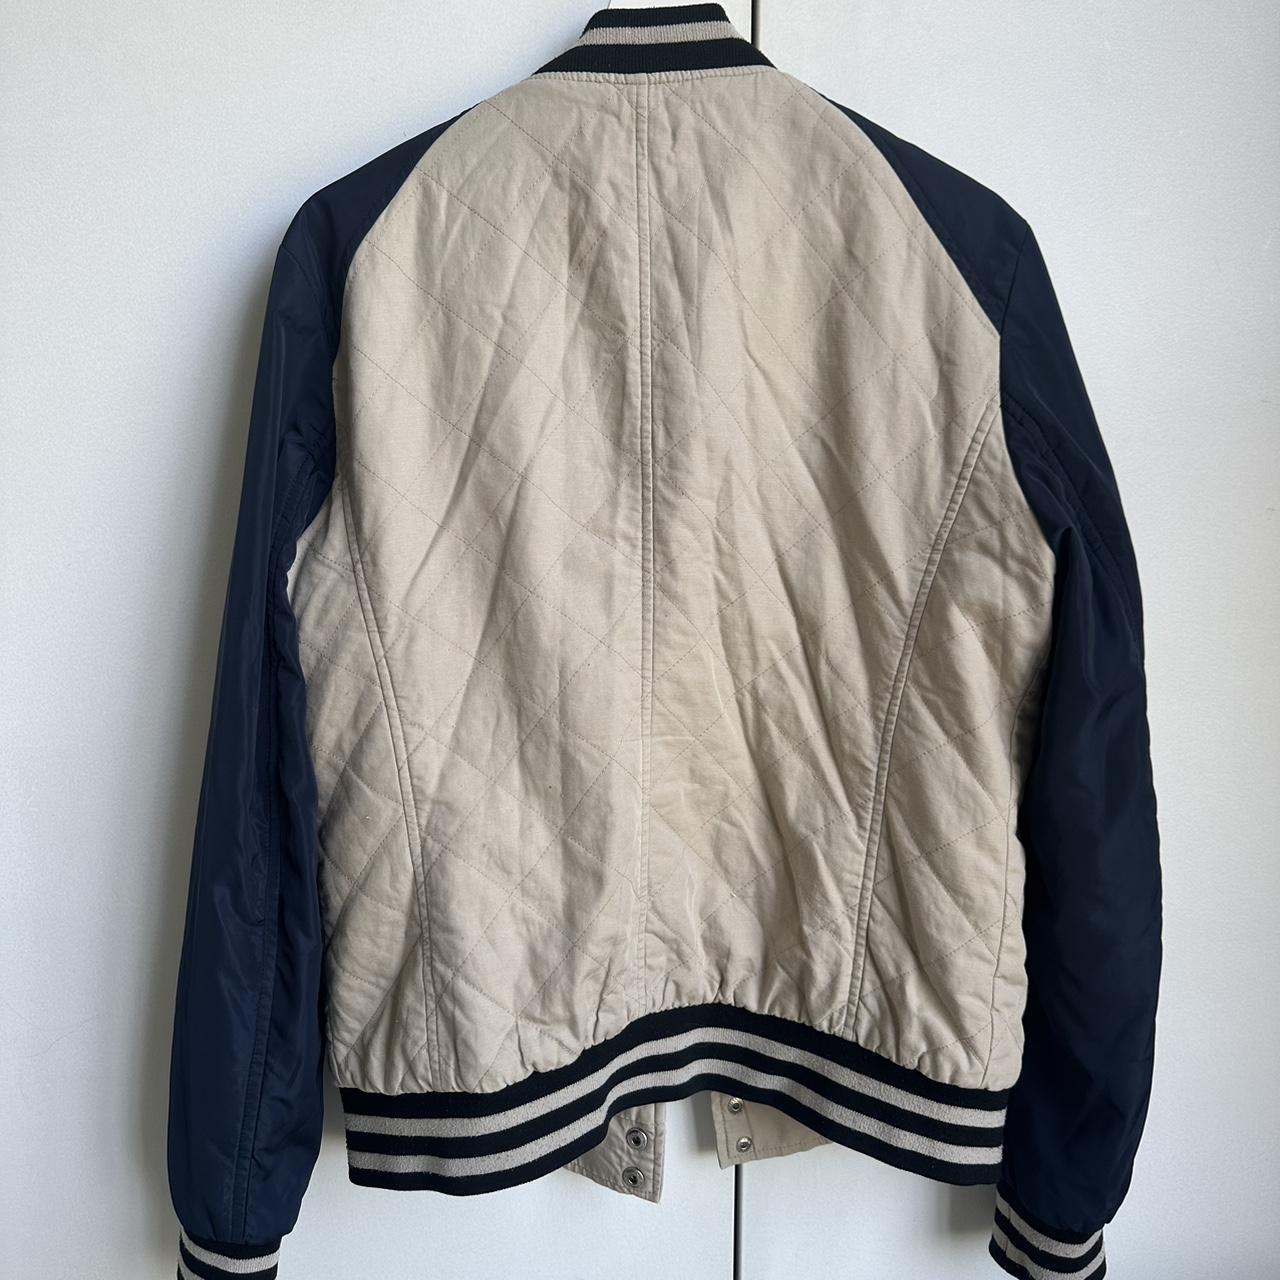 Vintage Bomber Jacket Brand: Fairwhale... - Depop